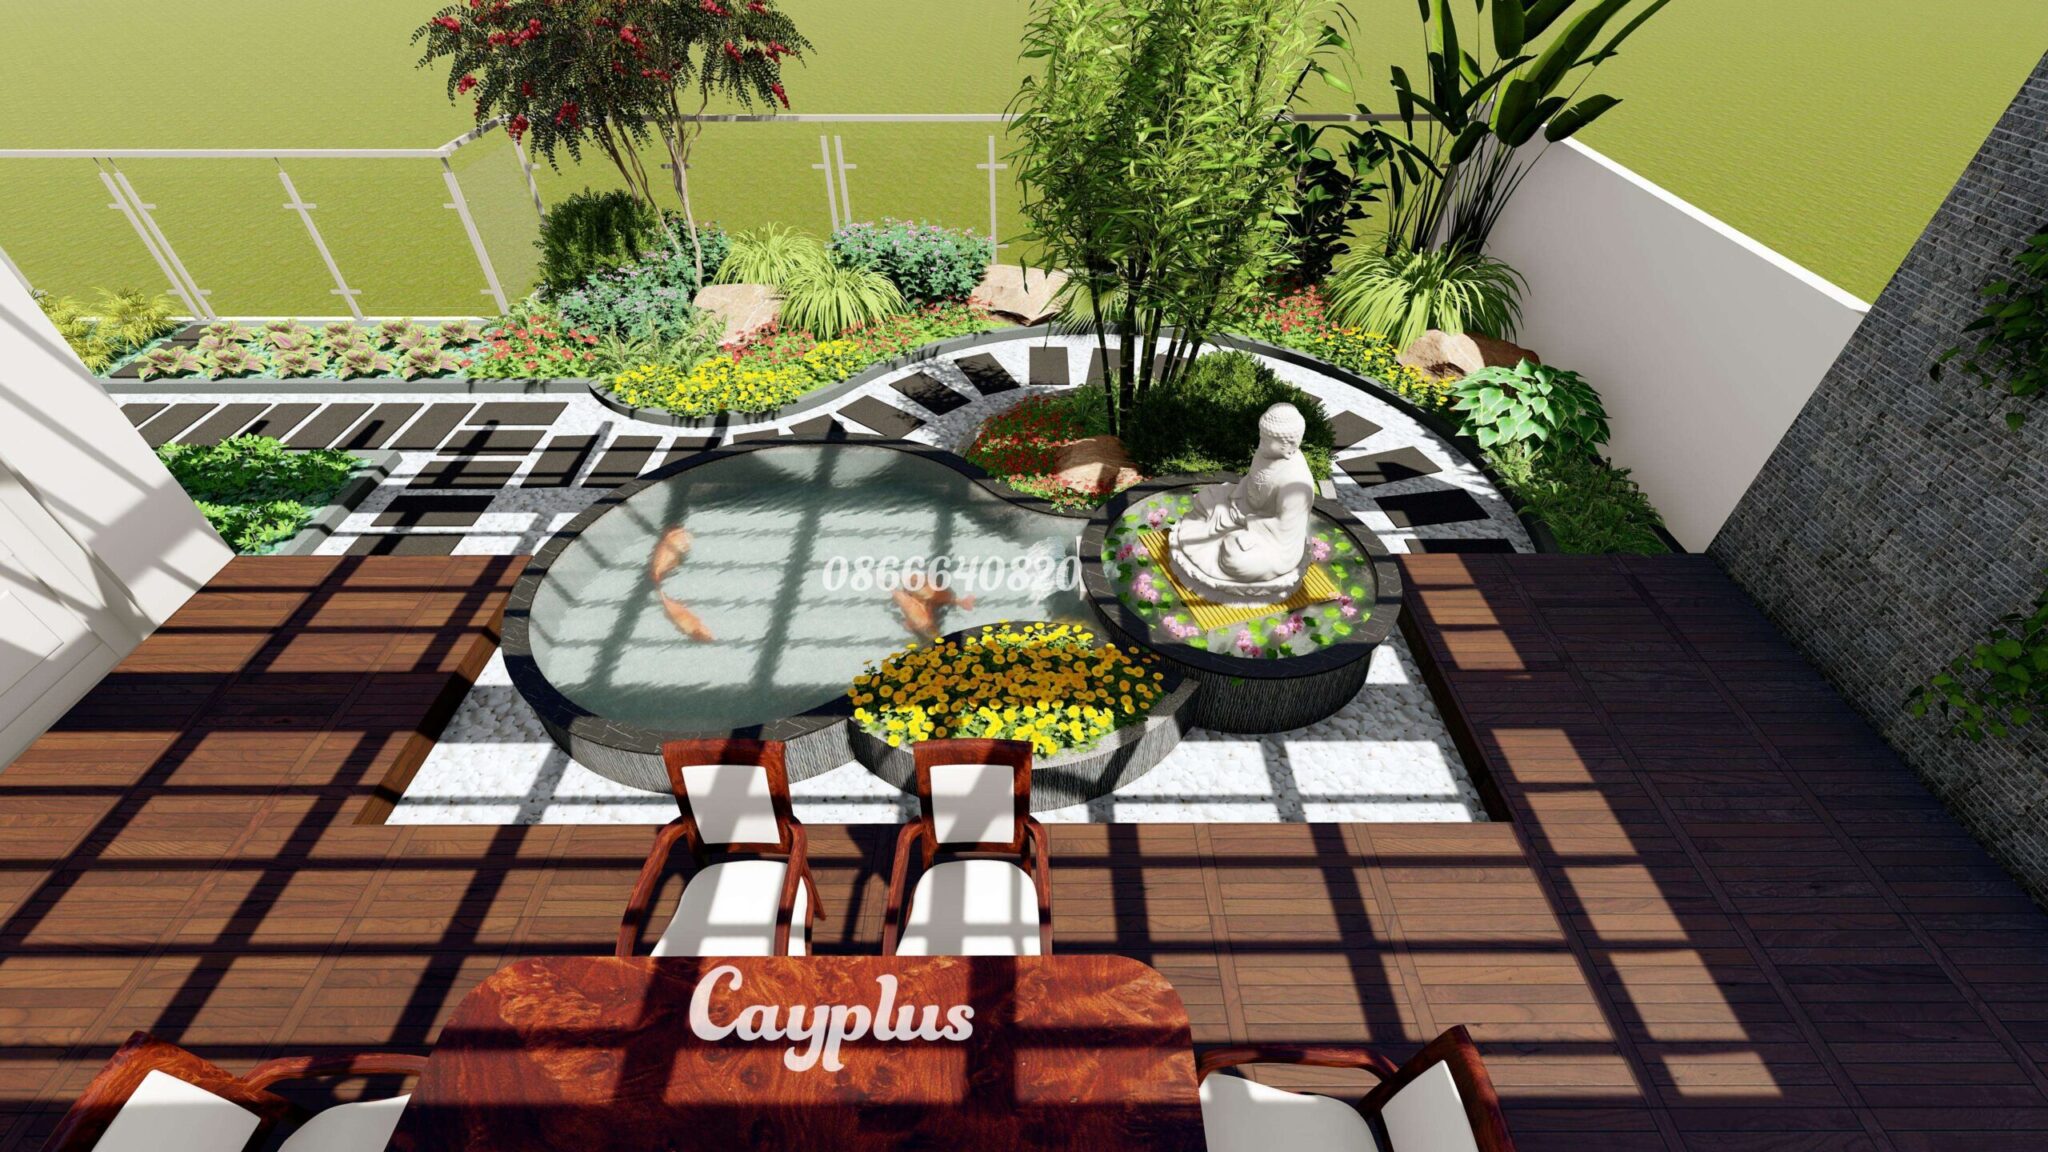 Ý tưởng độc đáo sân vườn trên sân thượng - Cayplus - Thiết kế sân vườn